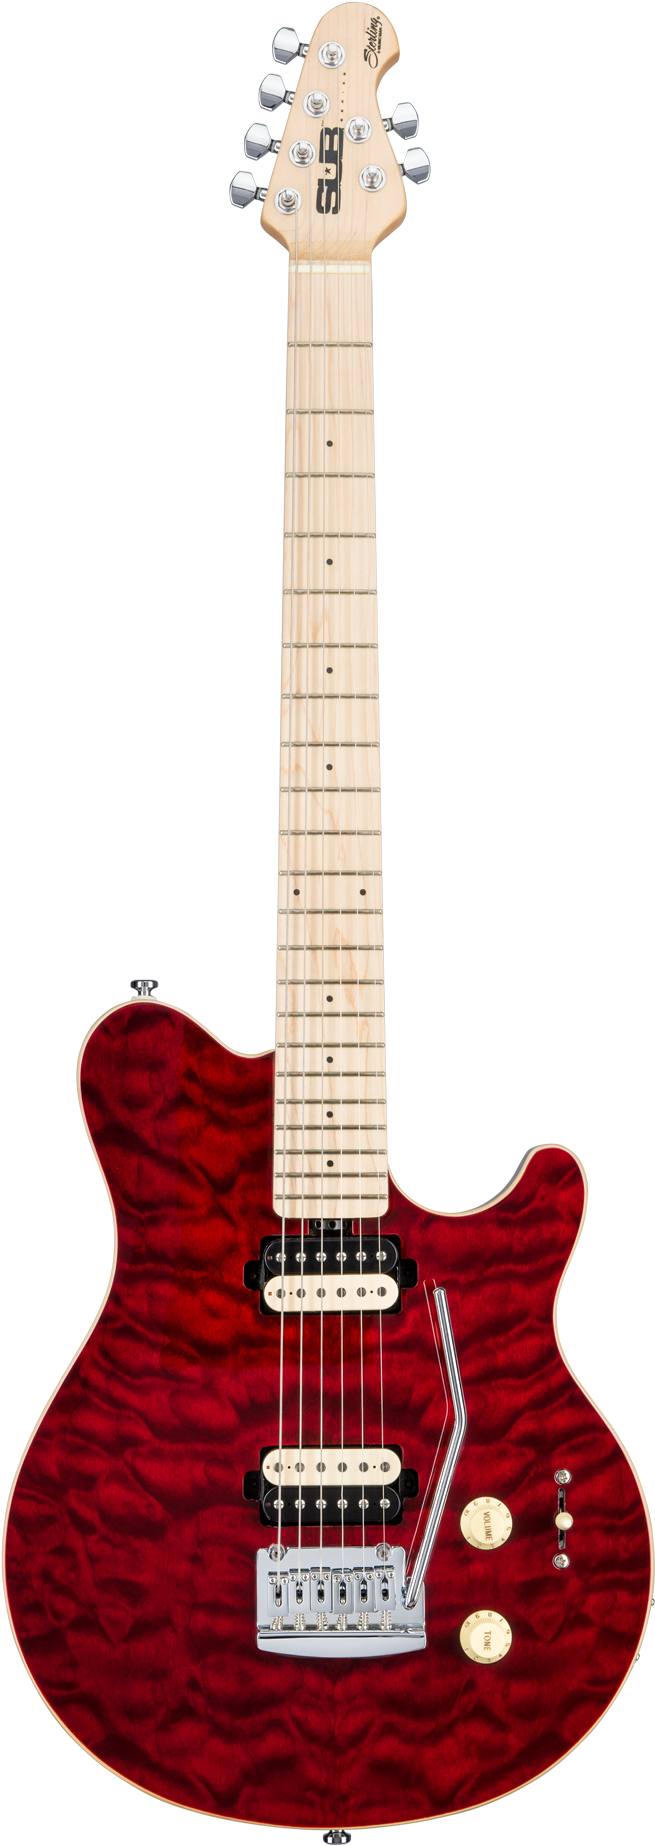 Красная электрическая гитара PNG Clipart